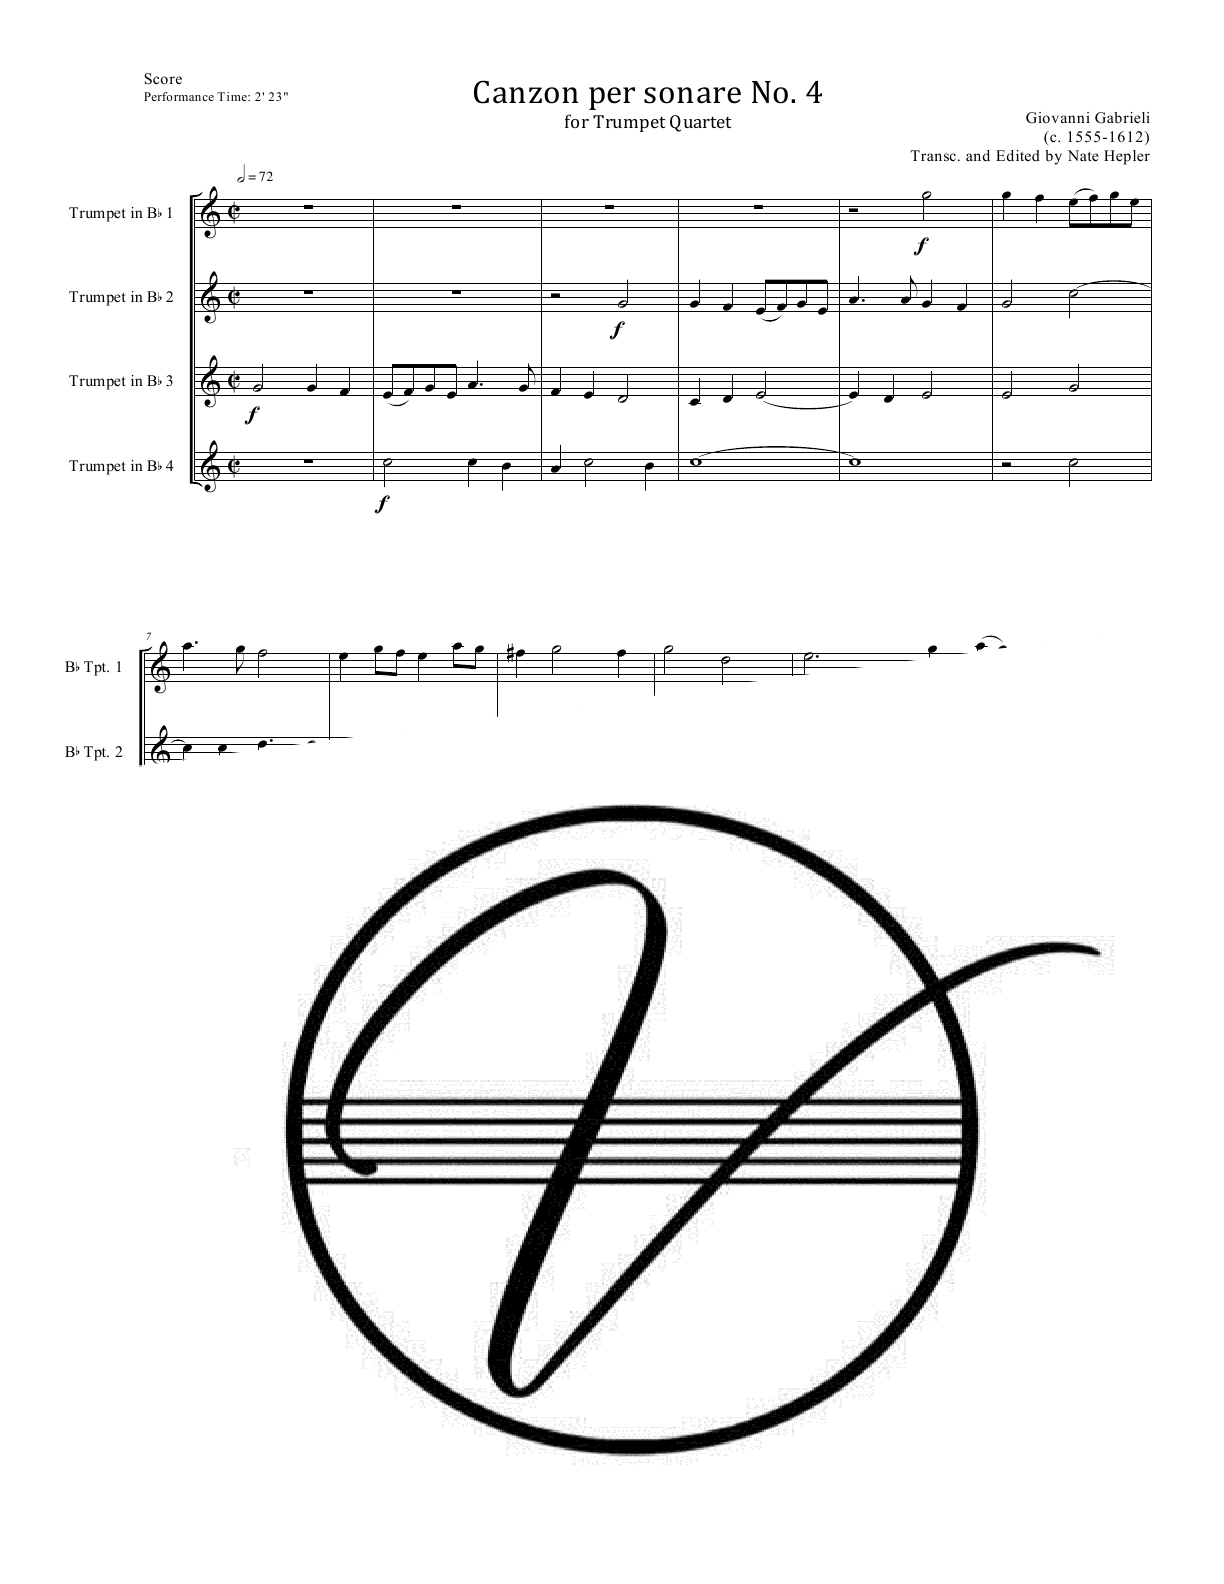 Gabrieli - Canzon per sonare No. 4 (Trumpet Quartet)